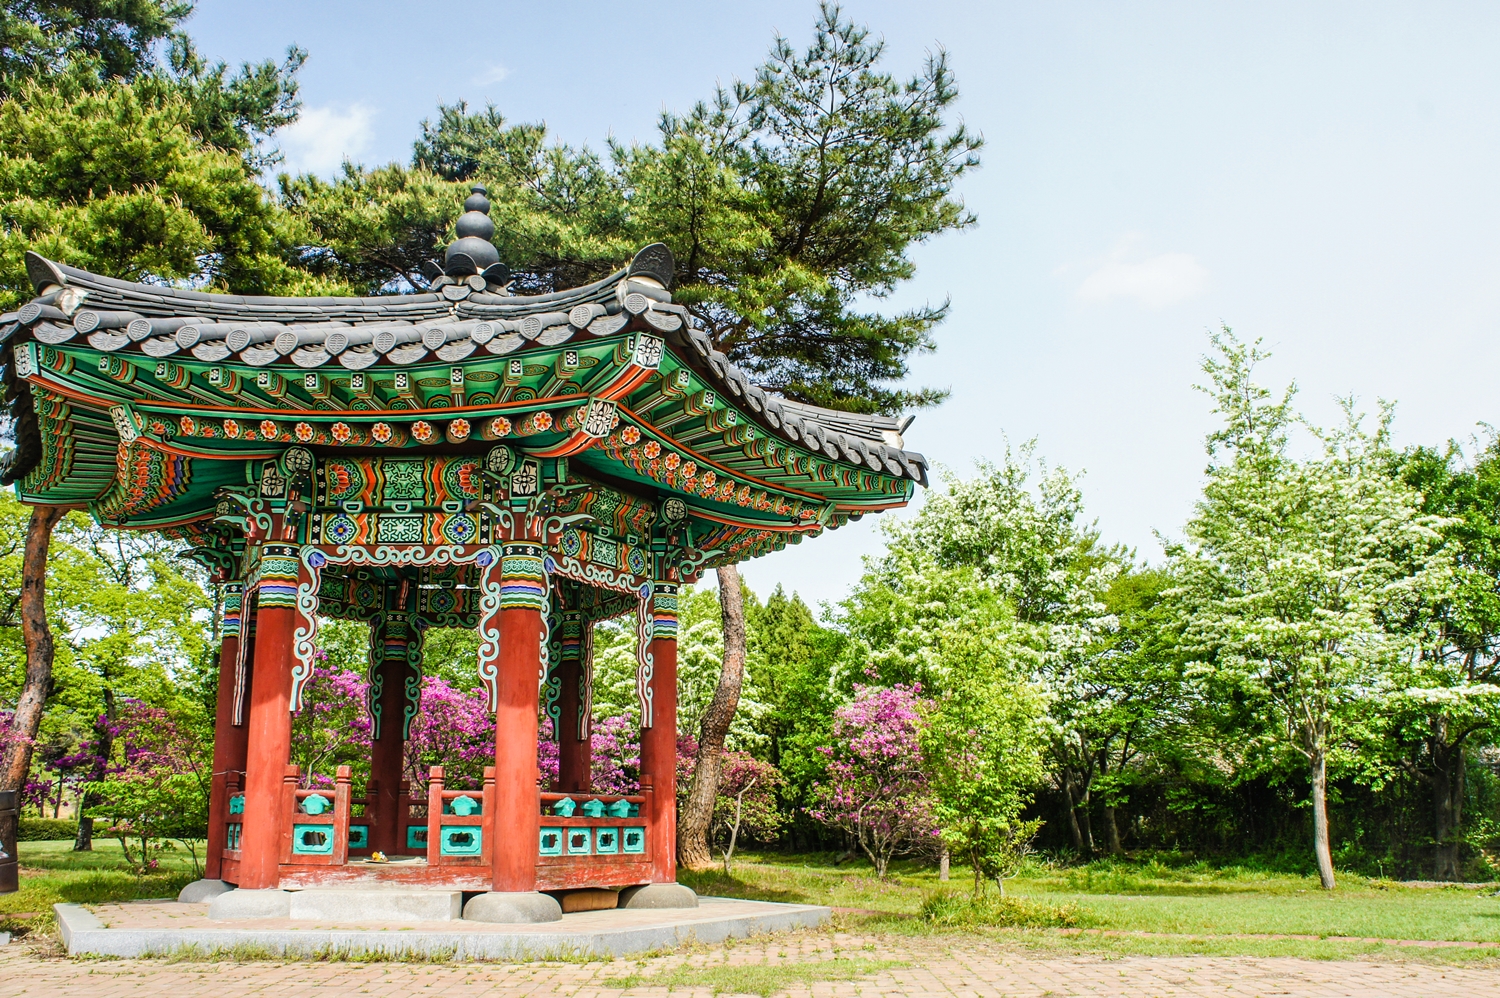 2019 유당공원, 이팝나무 충혼각 [봄, 여름, 광양 공원, 초록색, 길]